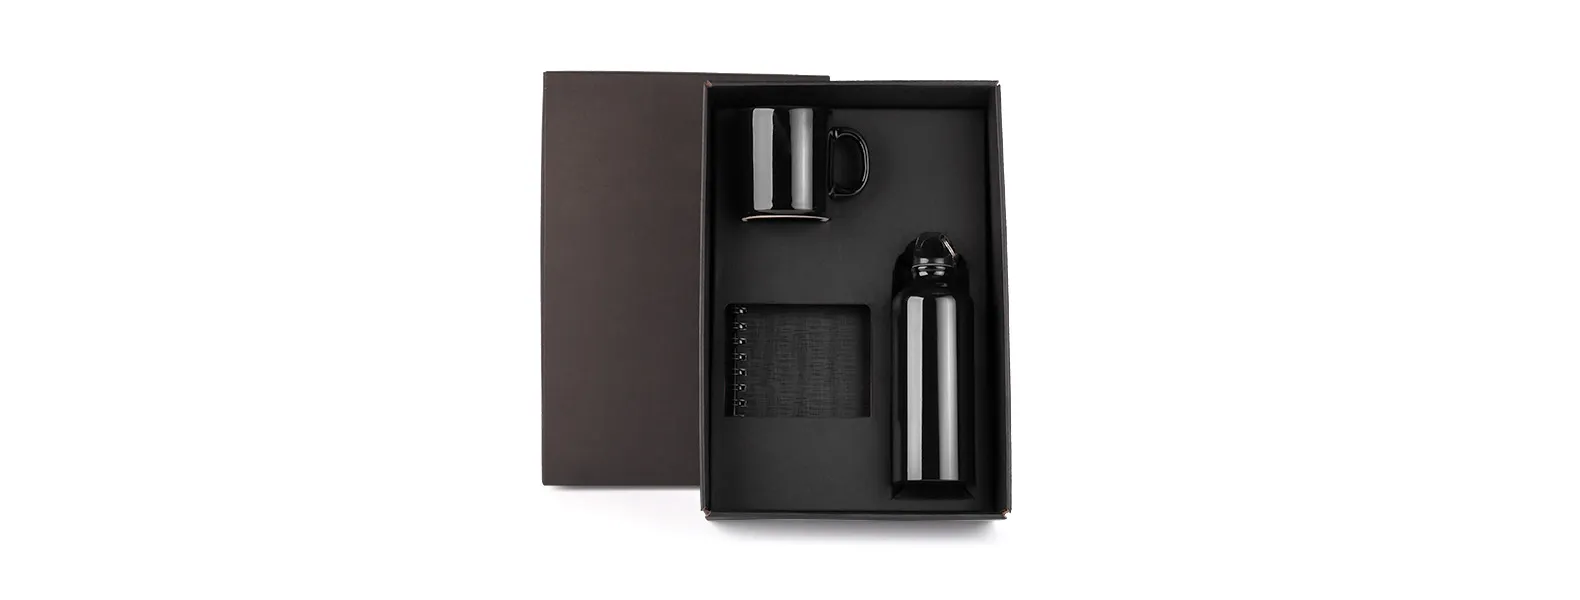 Kit composto por caderno para anotações wire-o preto com capa dura revestida em percalux linho; squeeze preto em alumínio revestido com verniz e caneca em cerâmica preta.